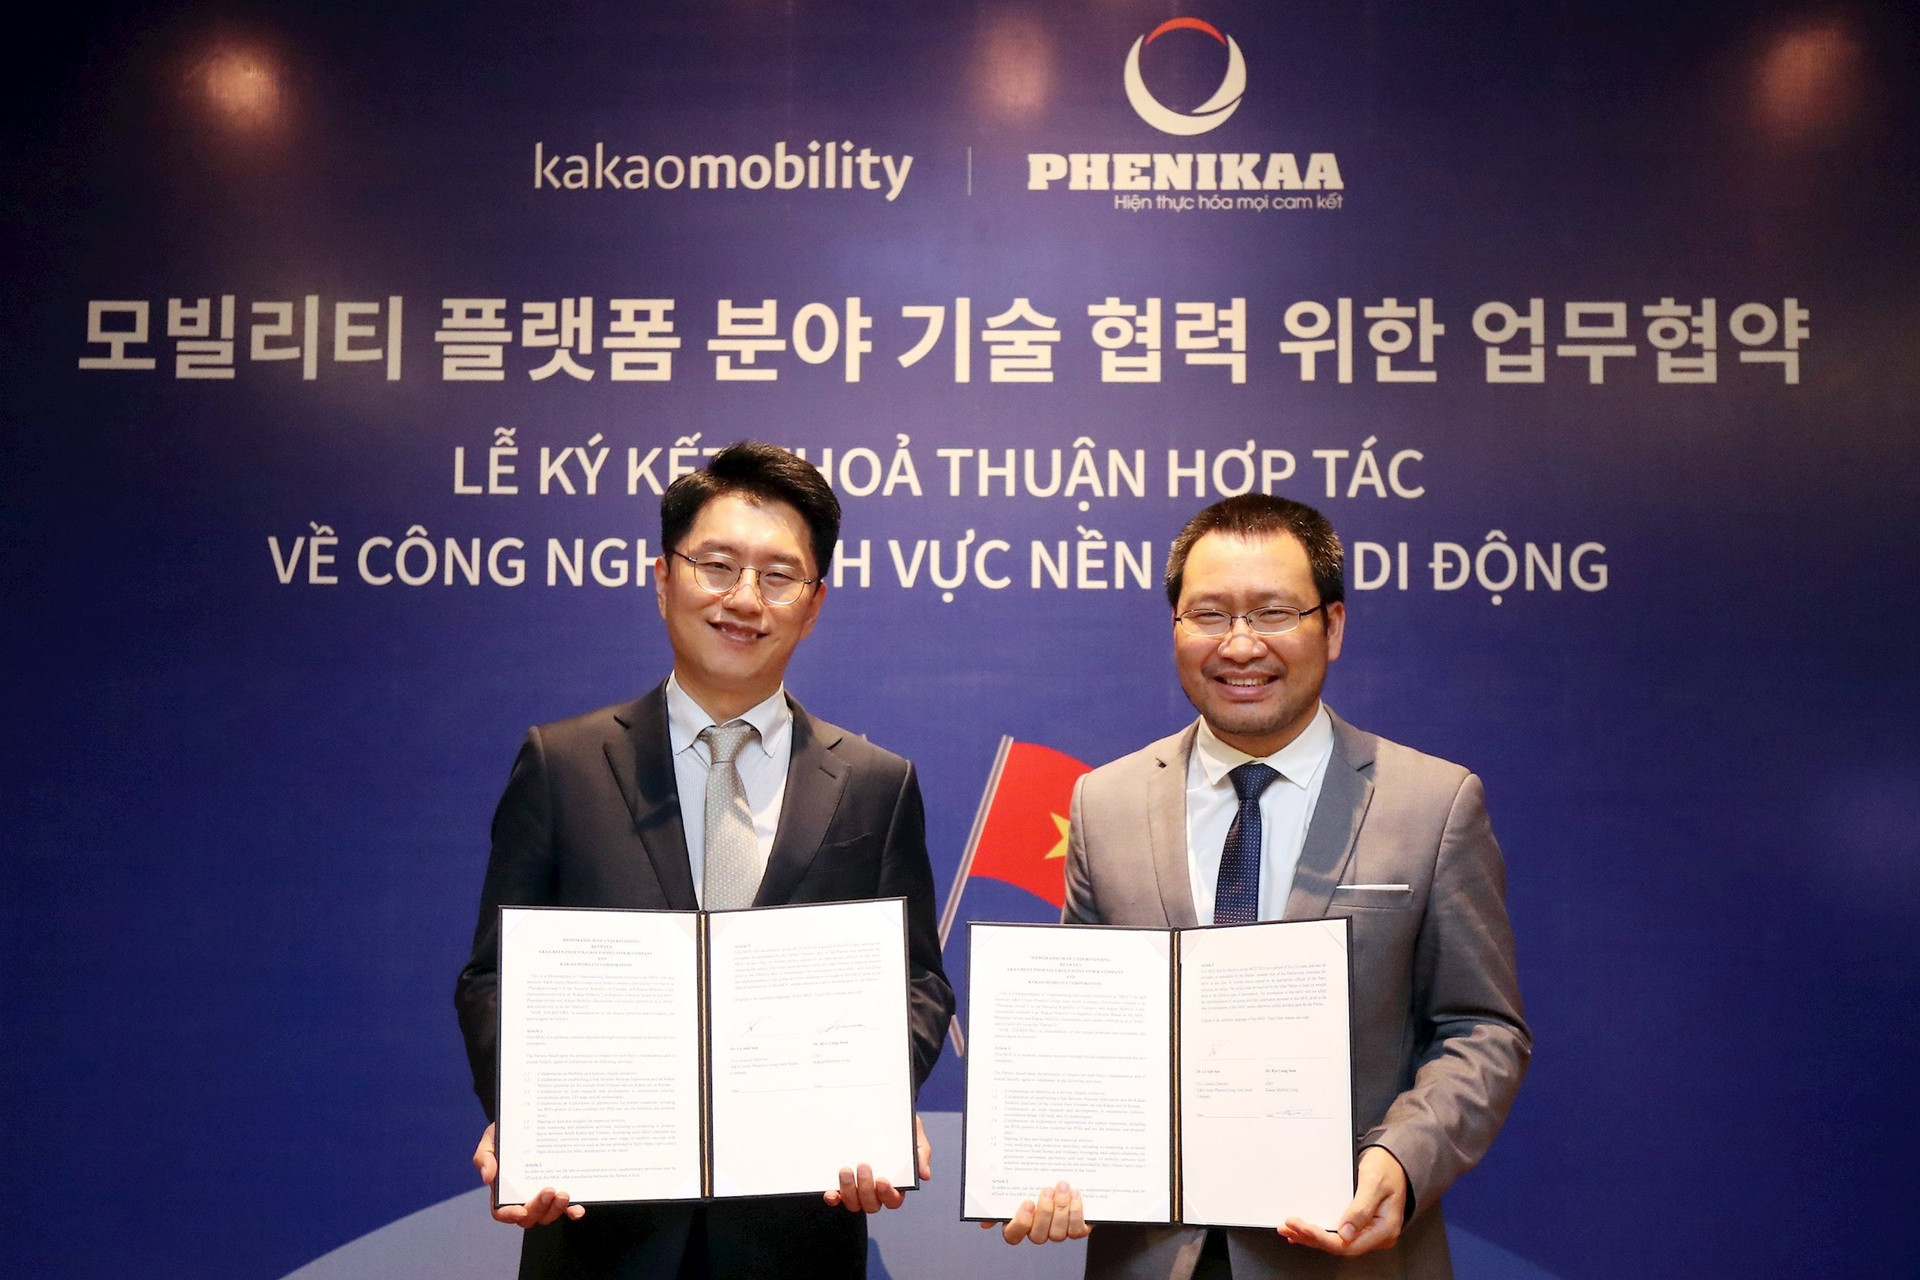 Tập đoàn của đại gia Hồ Xuân Năng ký kết hợp tác với hãng gọi xe Hàn Quốc: Phát triển taxi tự hành, bản đồ cho khách Việt tại Hàn Quốc - Ảnh 2.